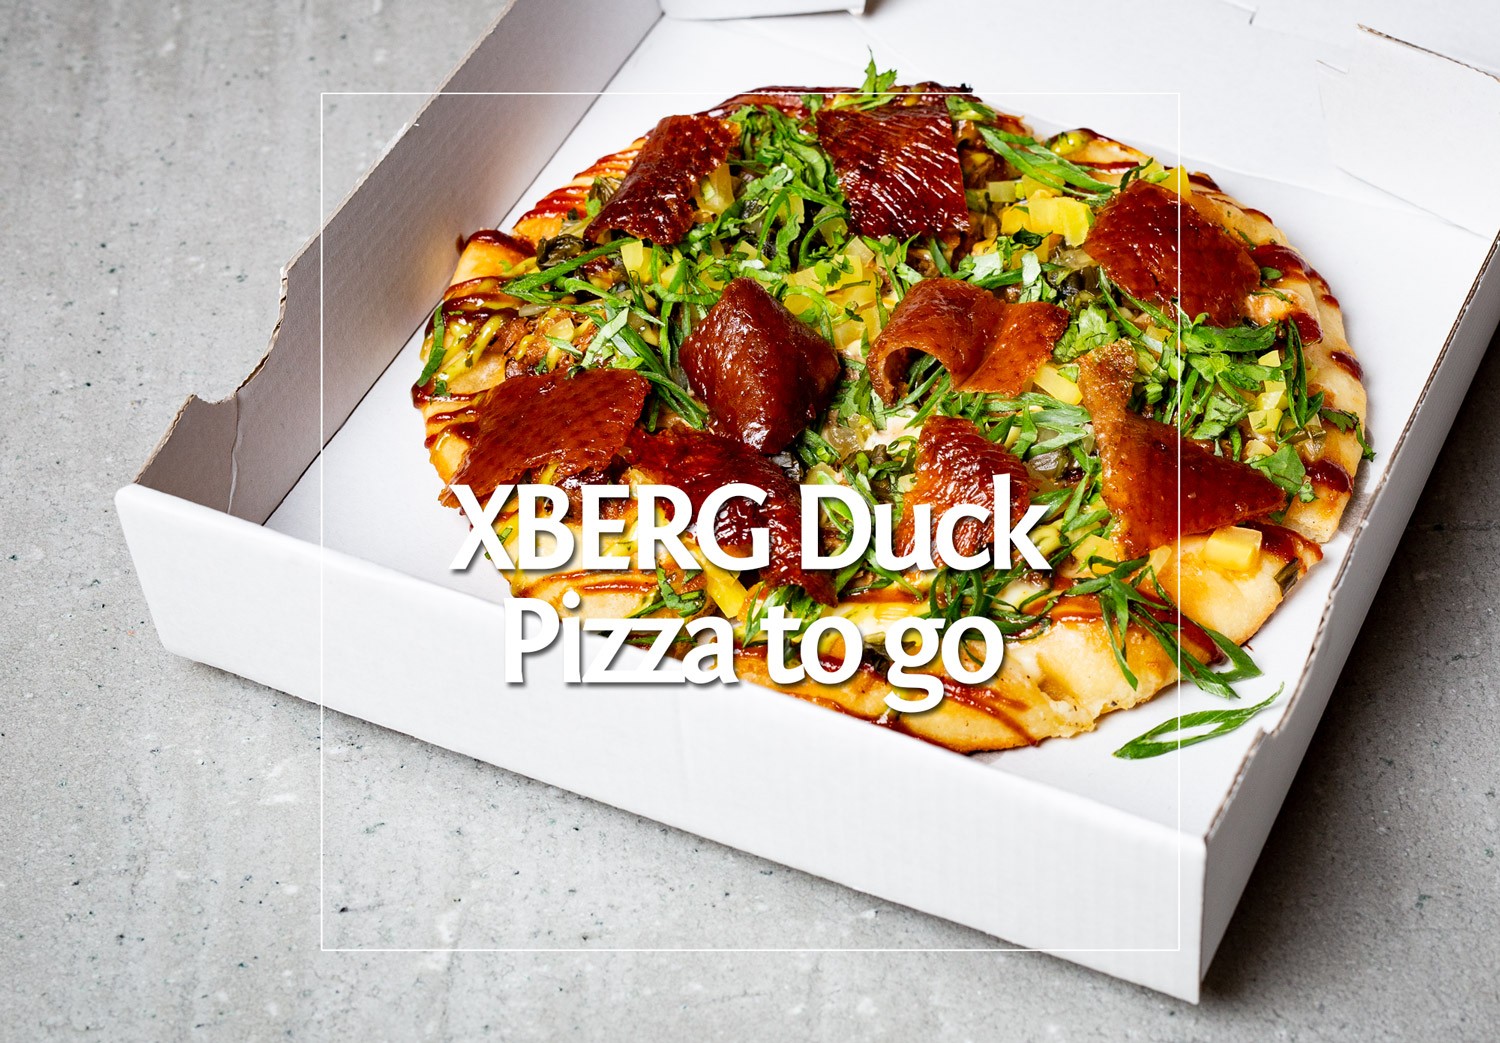 XBerg Duck Pizza aus dem Orania Restaurant